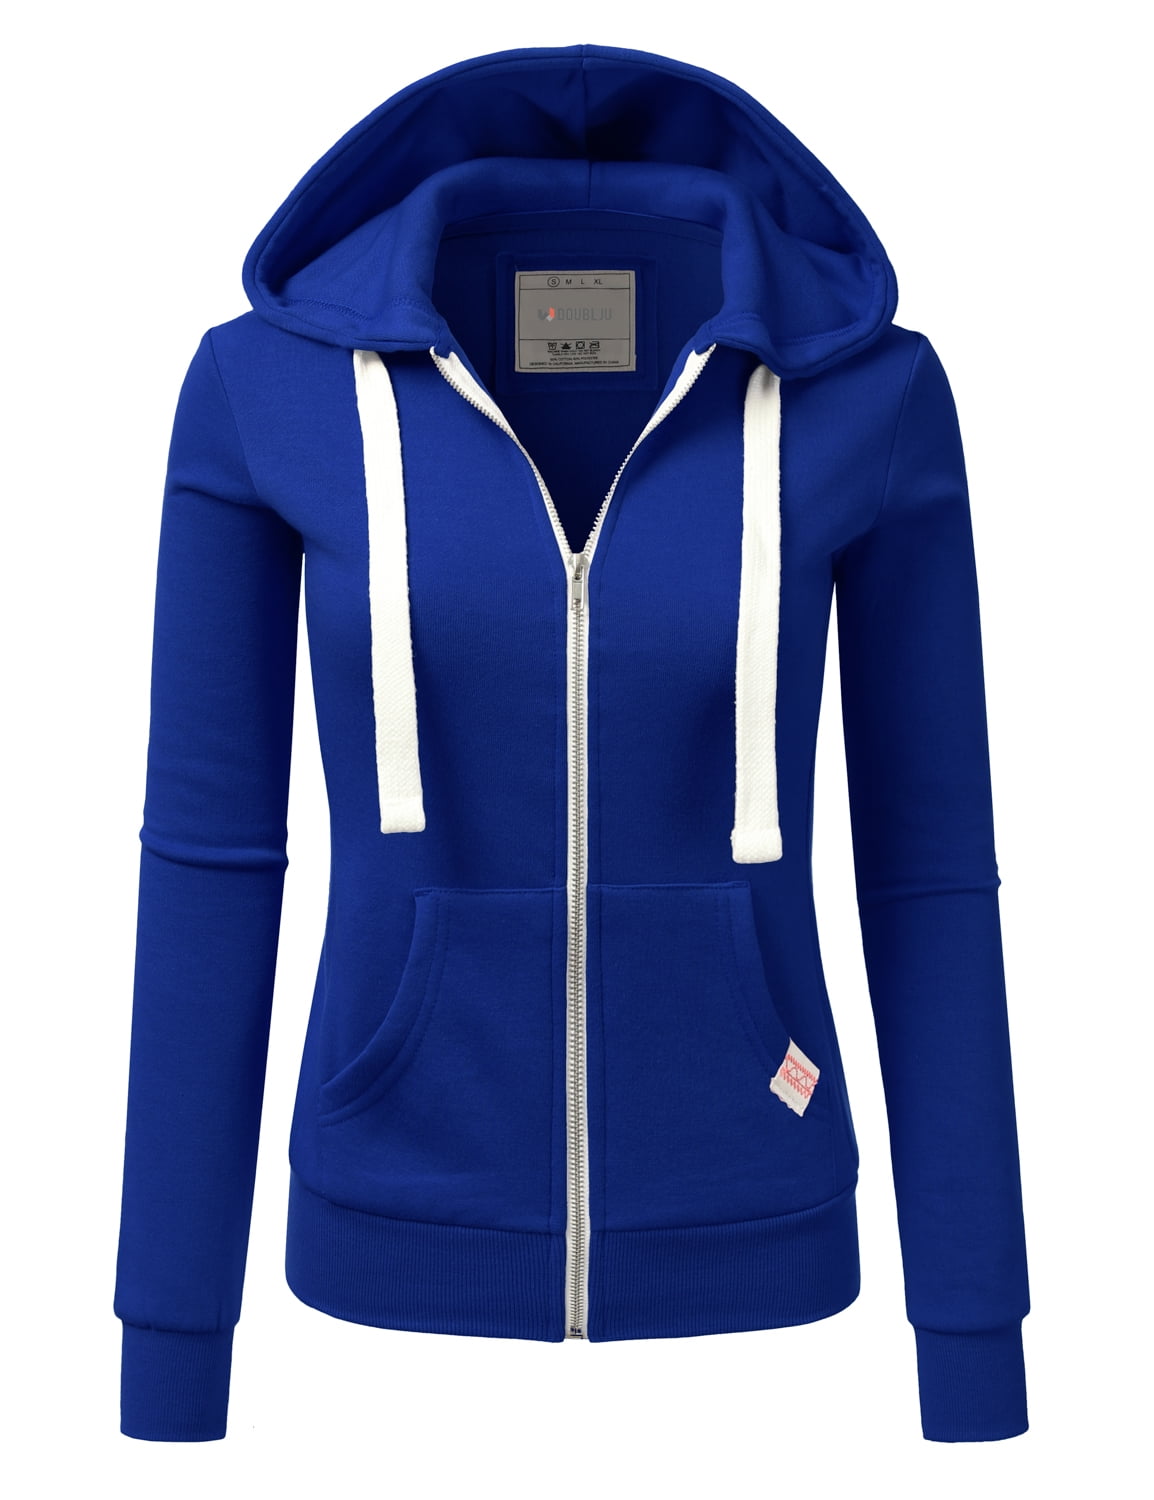 Doublju Women's Lightweight Pocket Zip-Up Hoodie Jacket for Women with ...